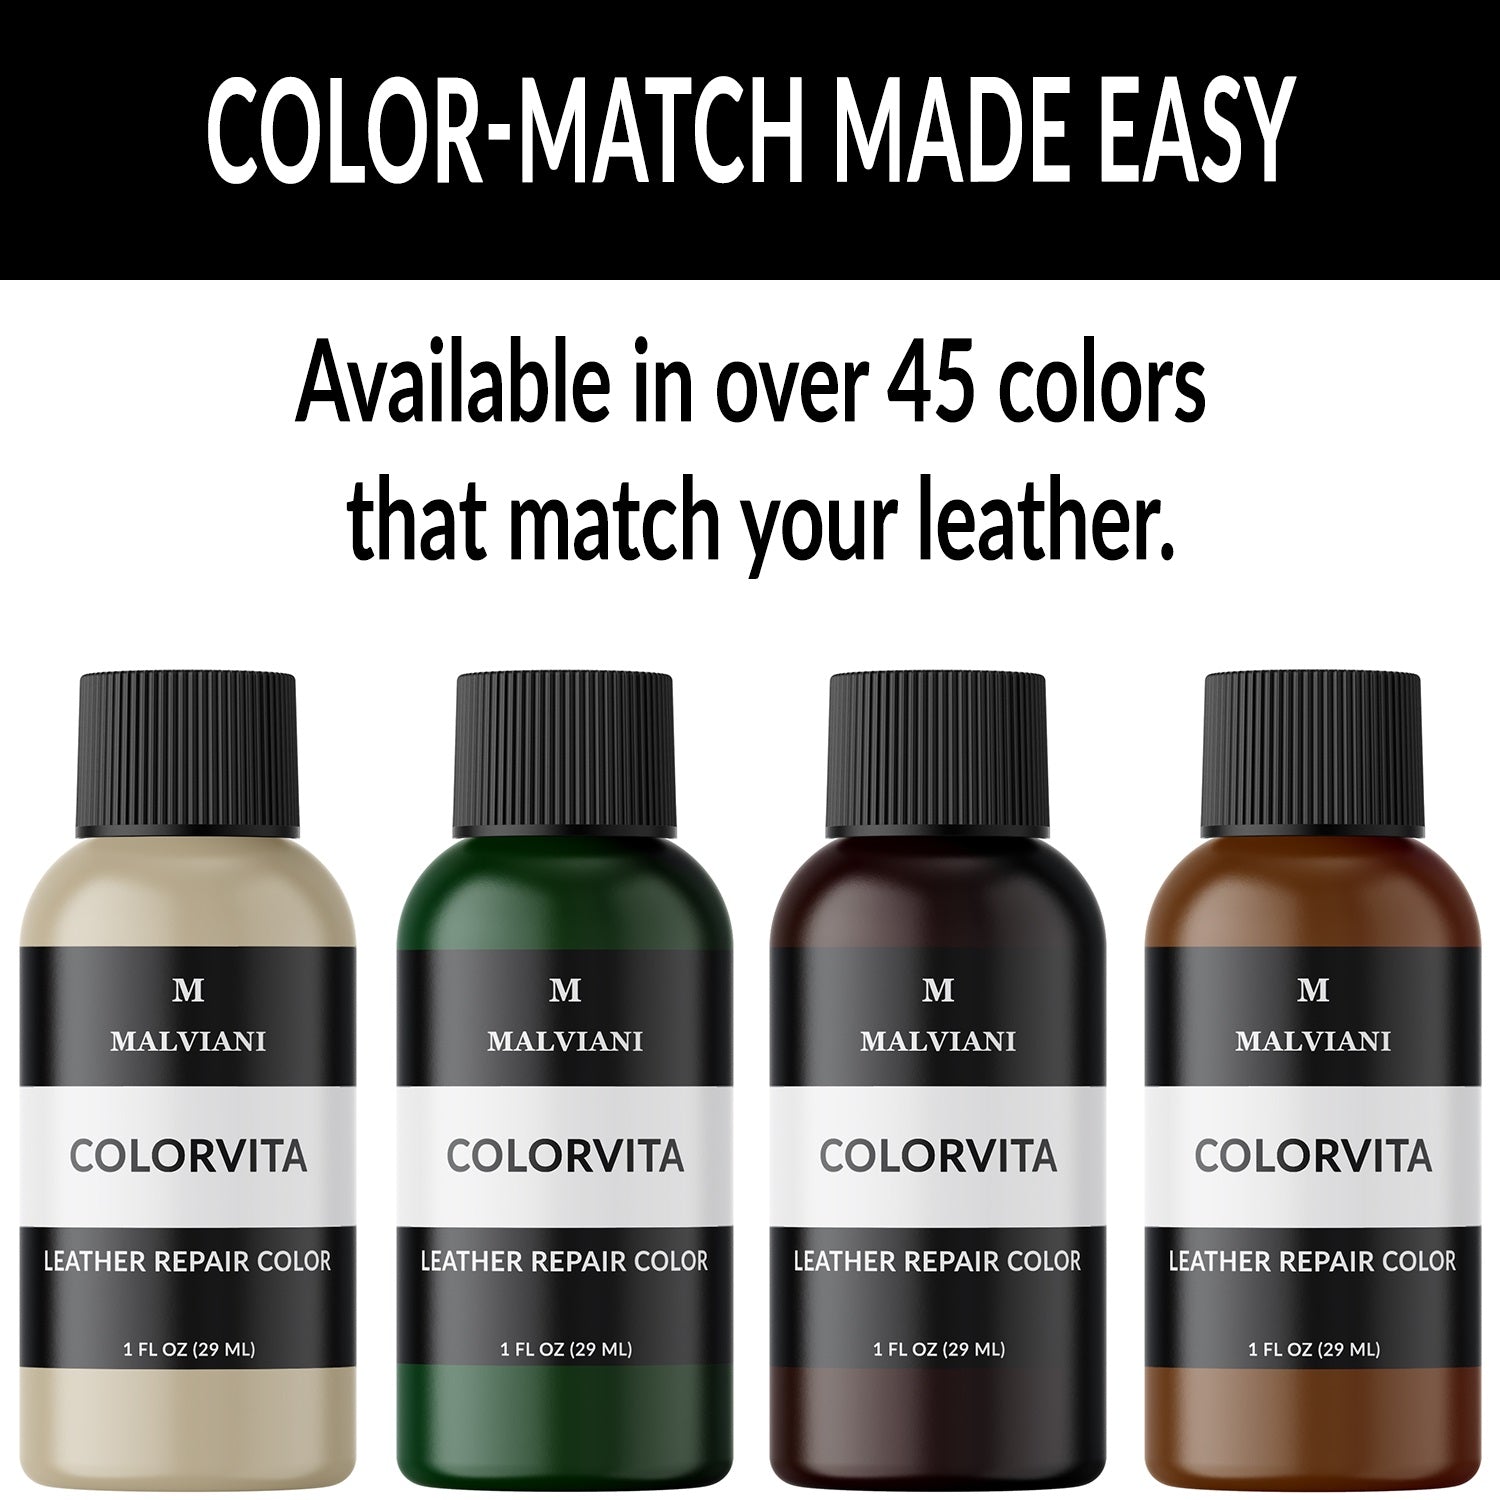 Cithway™ Leather Color Restorer – Imaginsugar